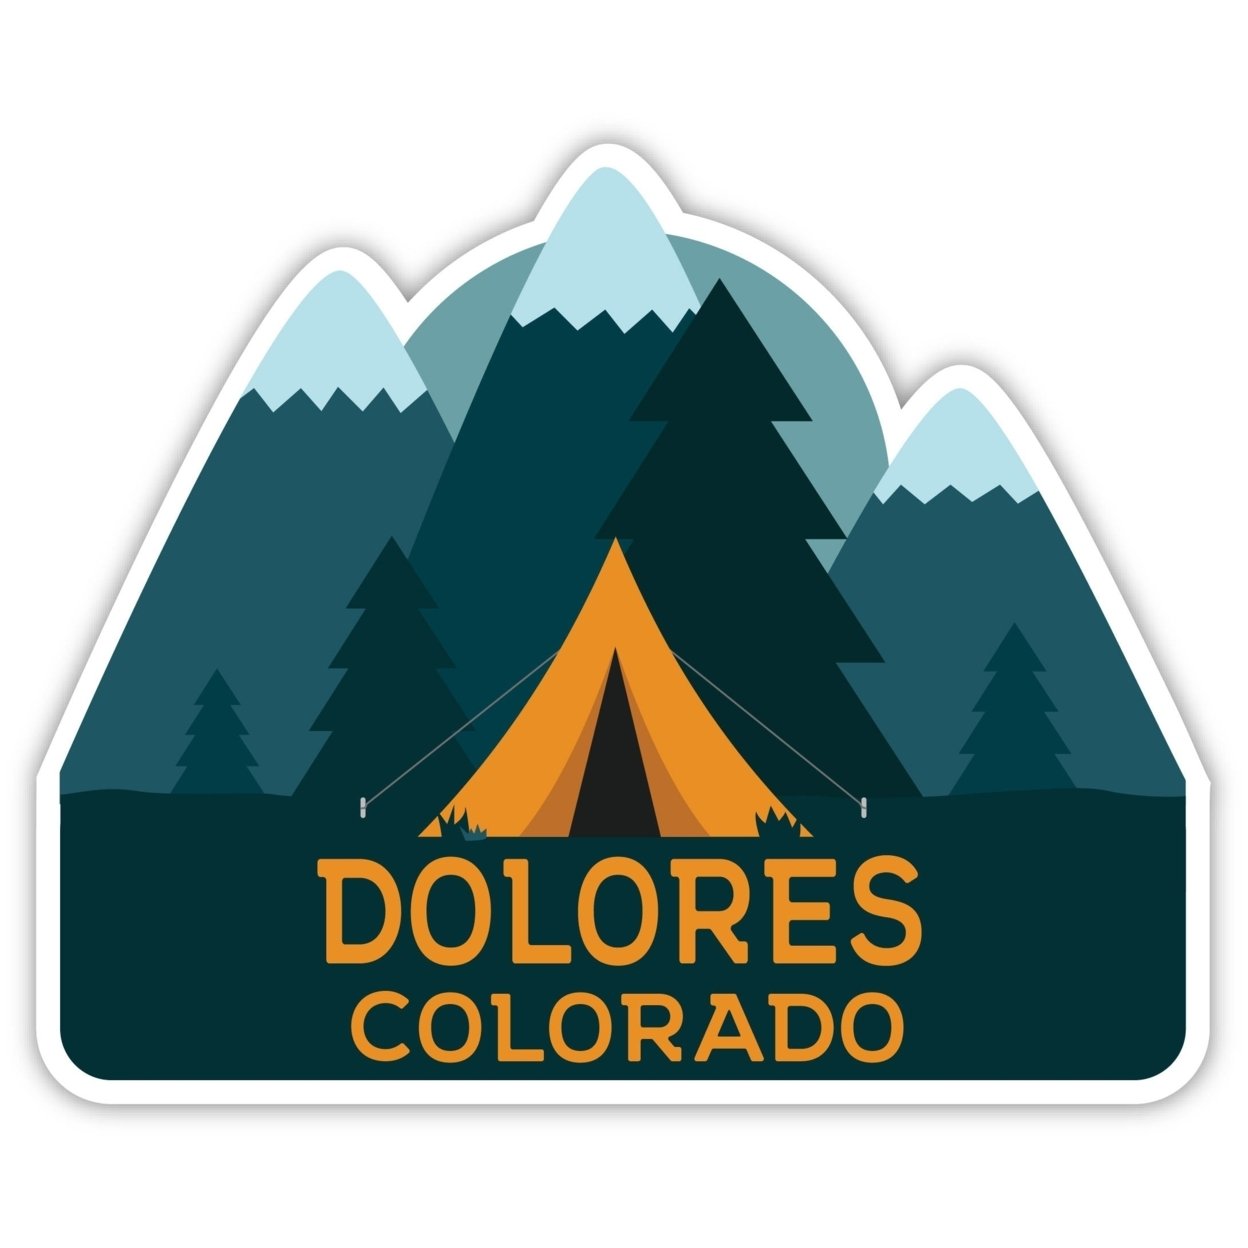 Dolores Colorado Souvenir Decorative Stickers (Choose Theme And Size) - Single Unit, 6-Inch, Tent